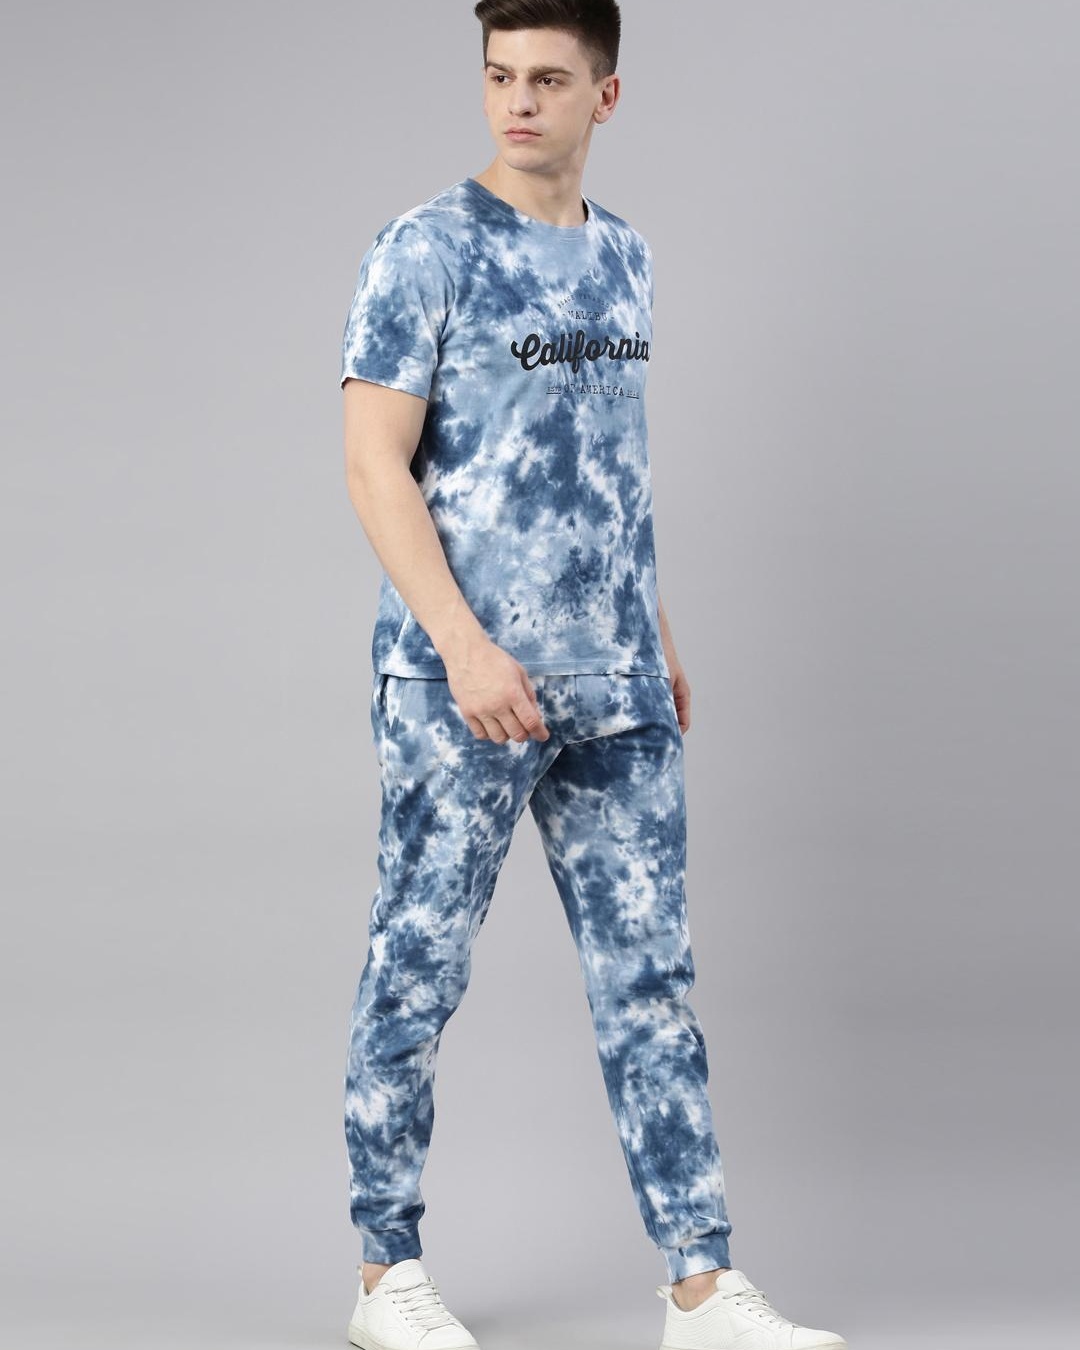 Buy Men's Blue Tie & Dye T-shirt & Pyjama Set Online in India at Bewakoof